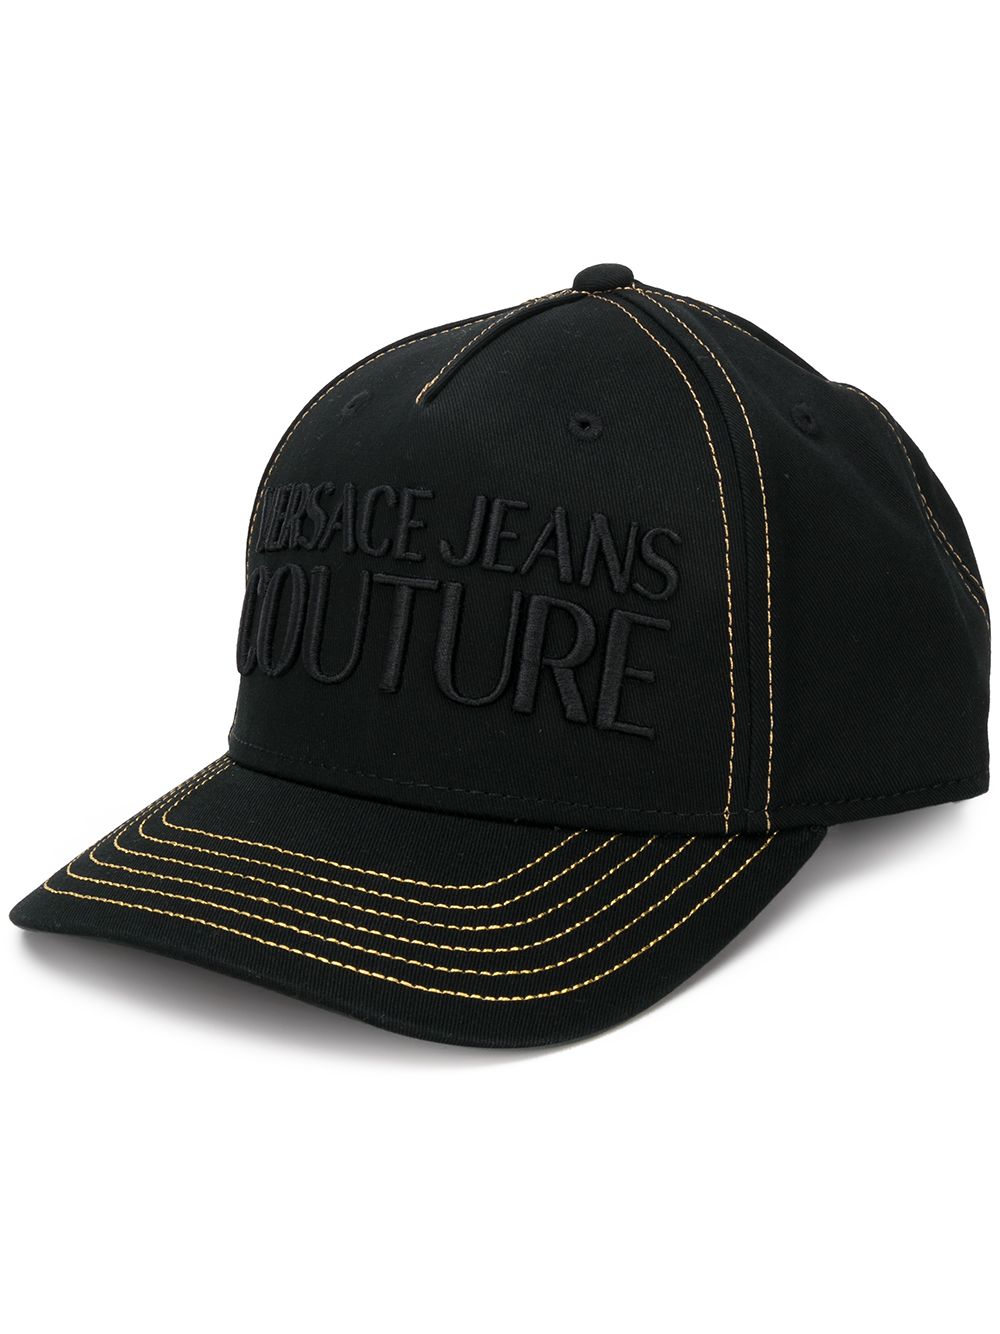 фото Versace jeans couture кепка с вышитым логотипом